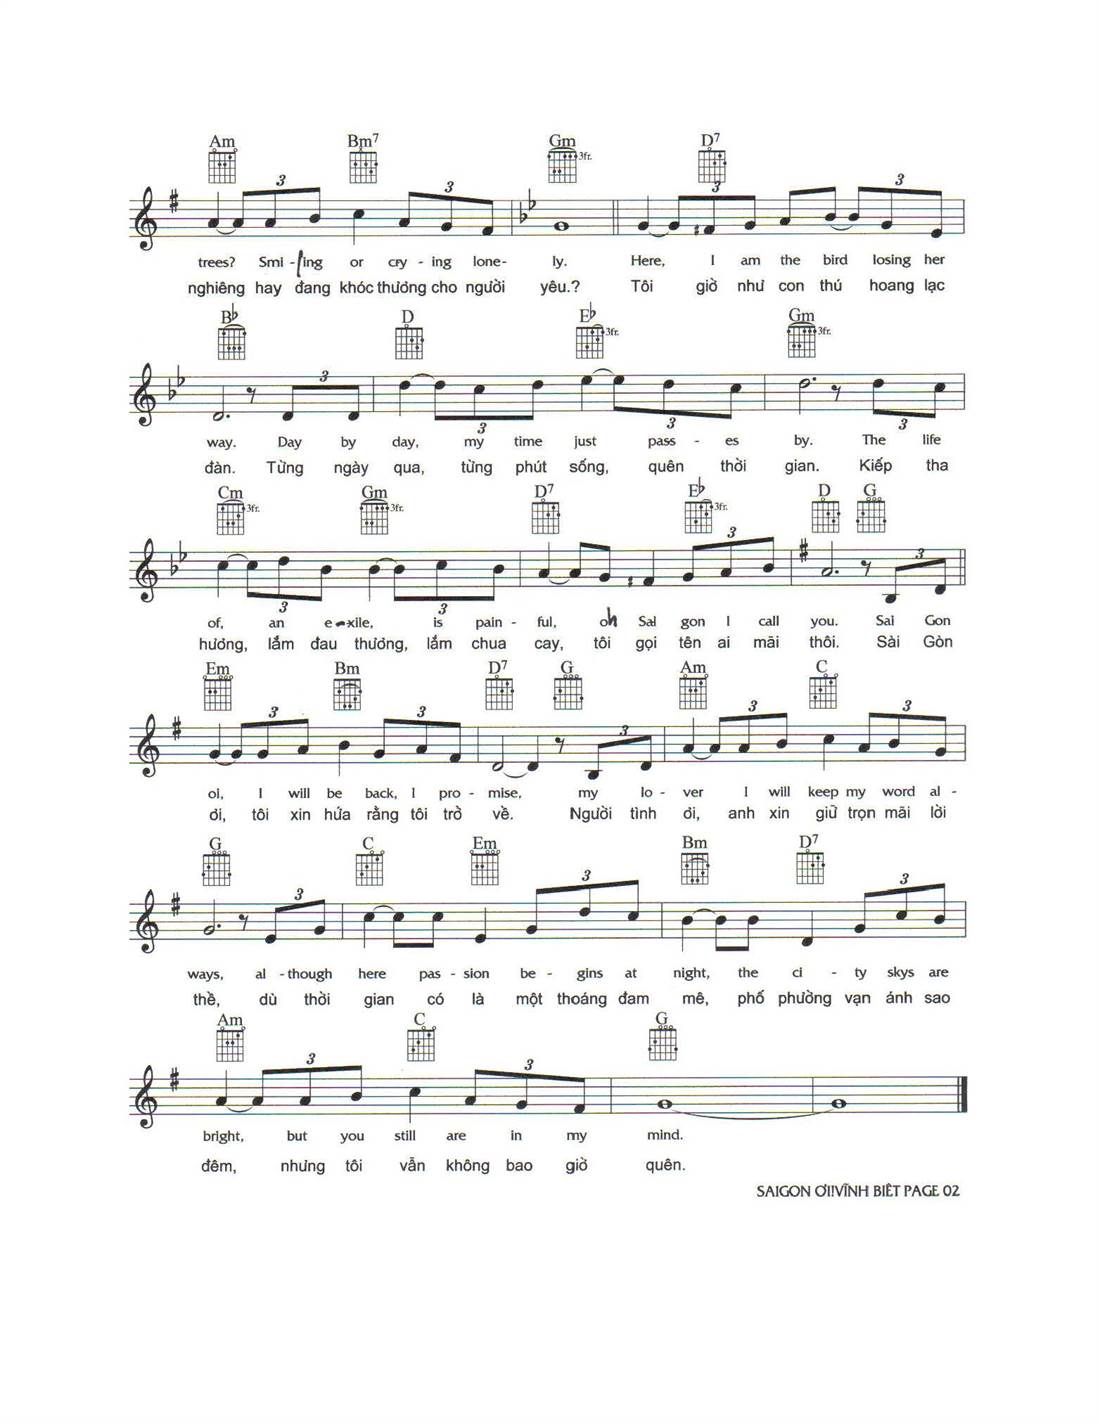 Sheet: Sài Gòn ơi vĩnh biệt - song lyric, sheet | chords.vip